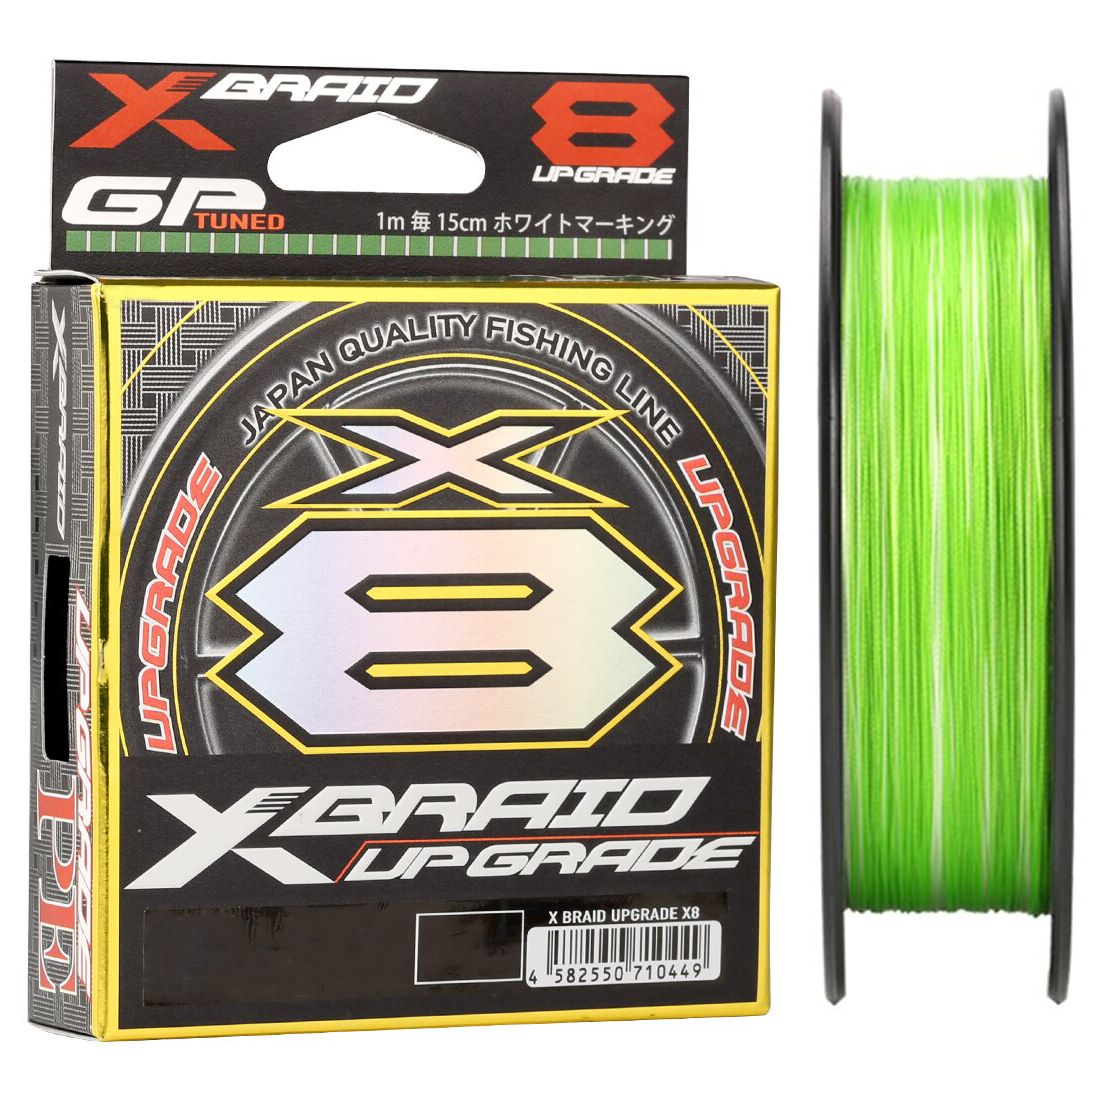 Шнур плетеный Ygk X Braid Upgrade x8 200 м 0.148 мм 7.2 кг цвет светло зеленый